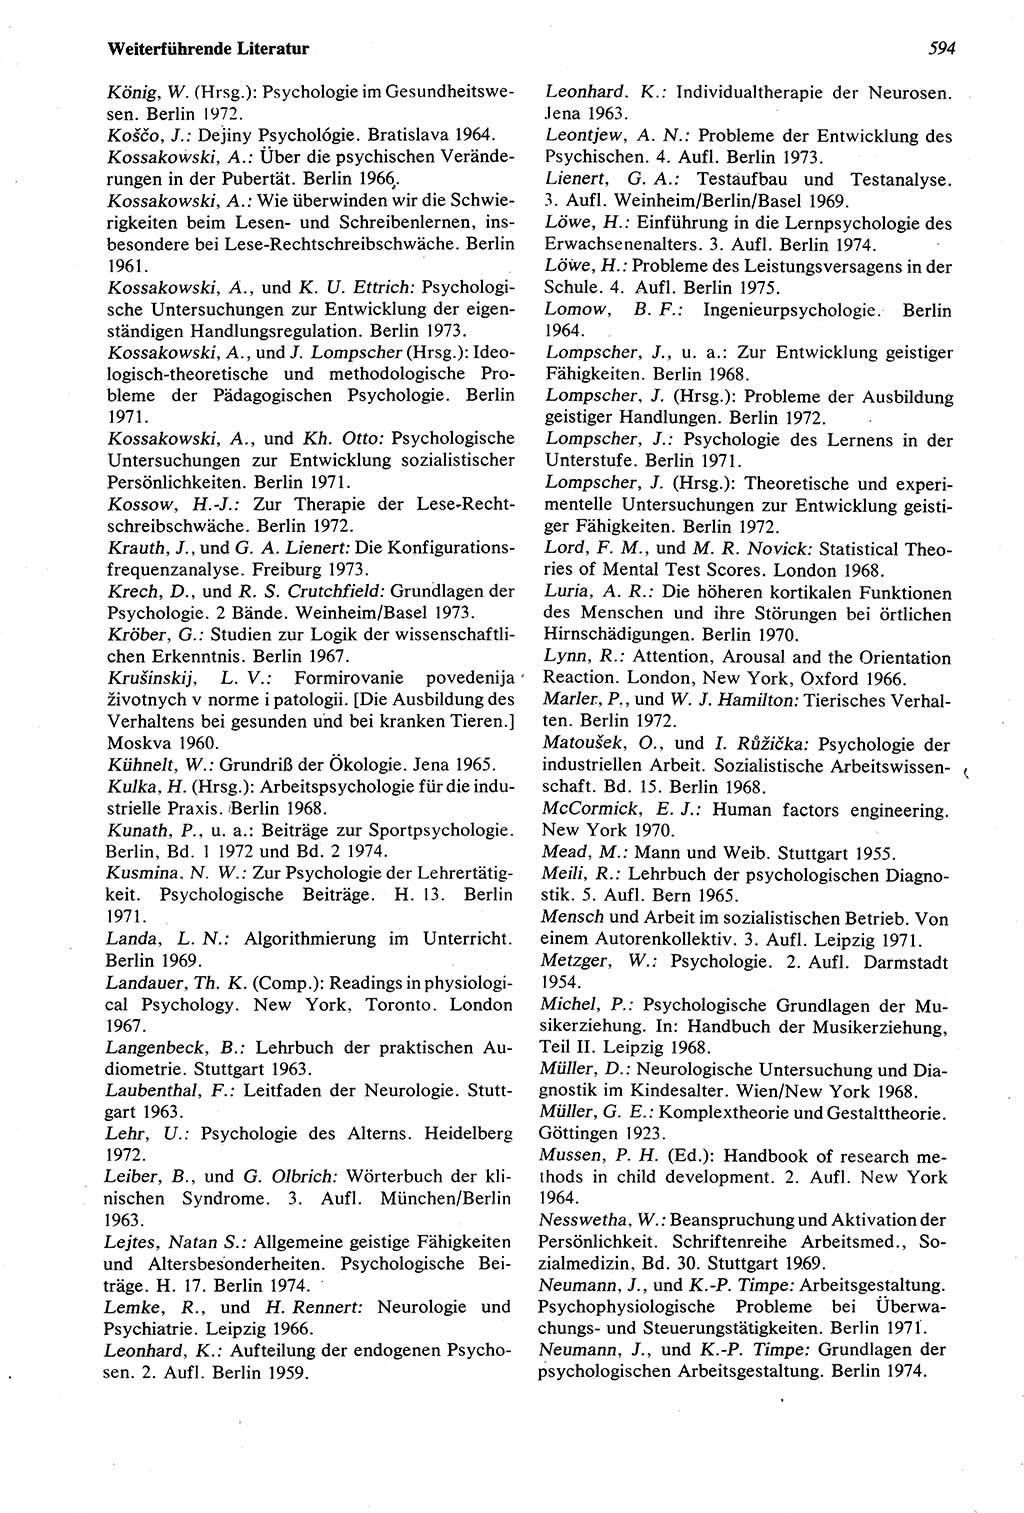 Wörterbuch der Psychologie [Deutsche Demokratische Republik (DDR)] 1976, Seite 594 (Wb. Psych. DDR 1976, S. 594)